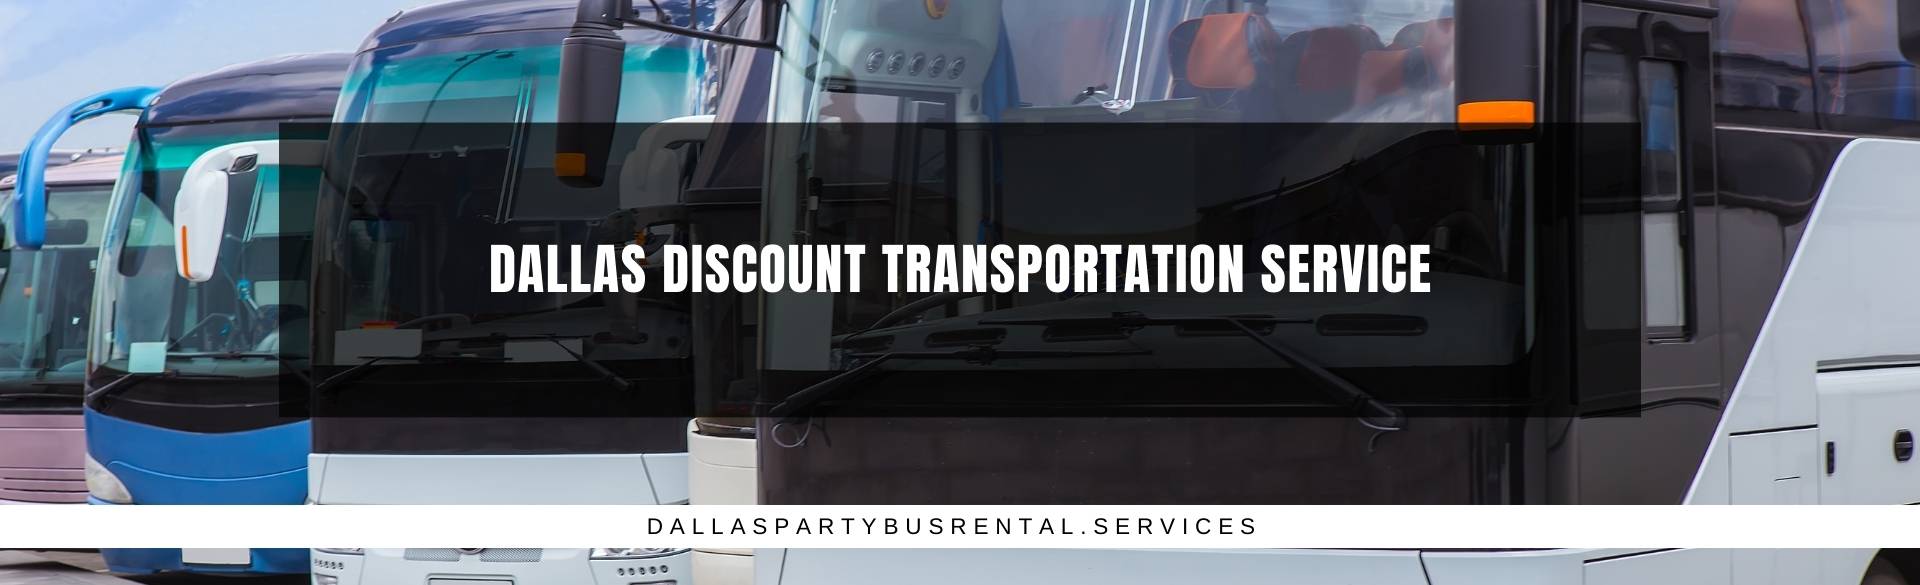 Dallas Discount Transportation Service